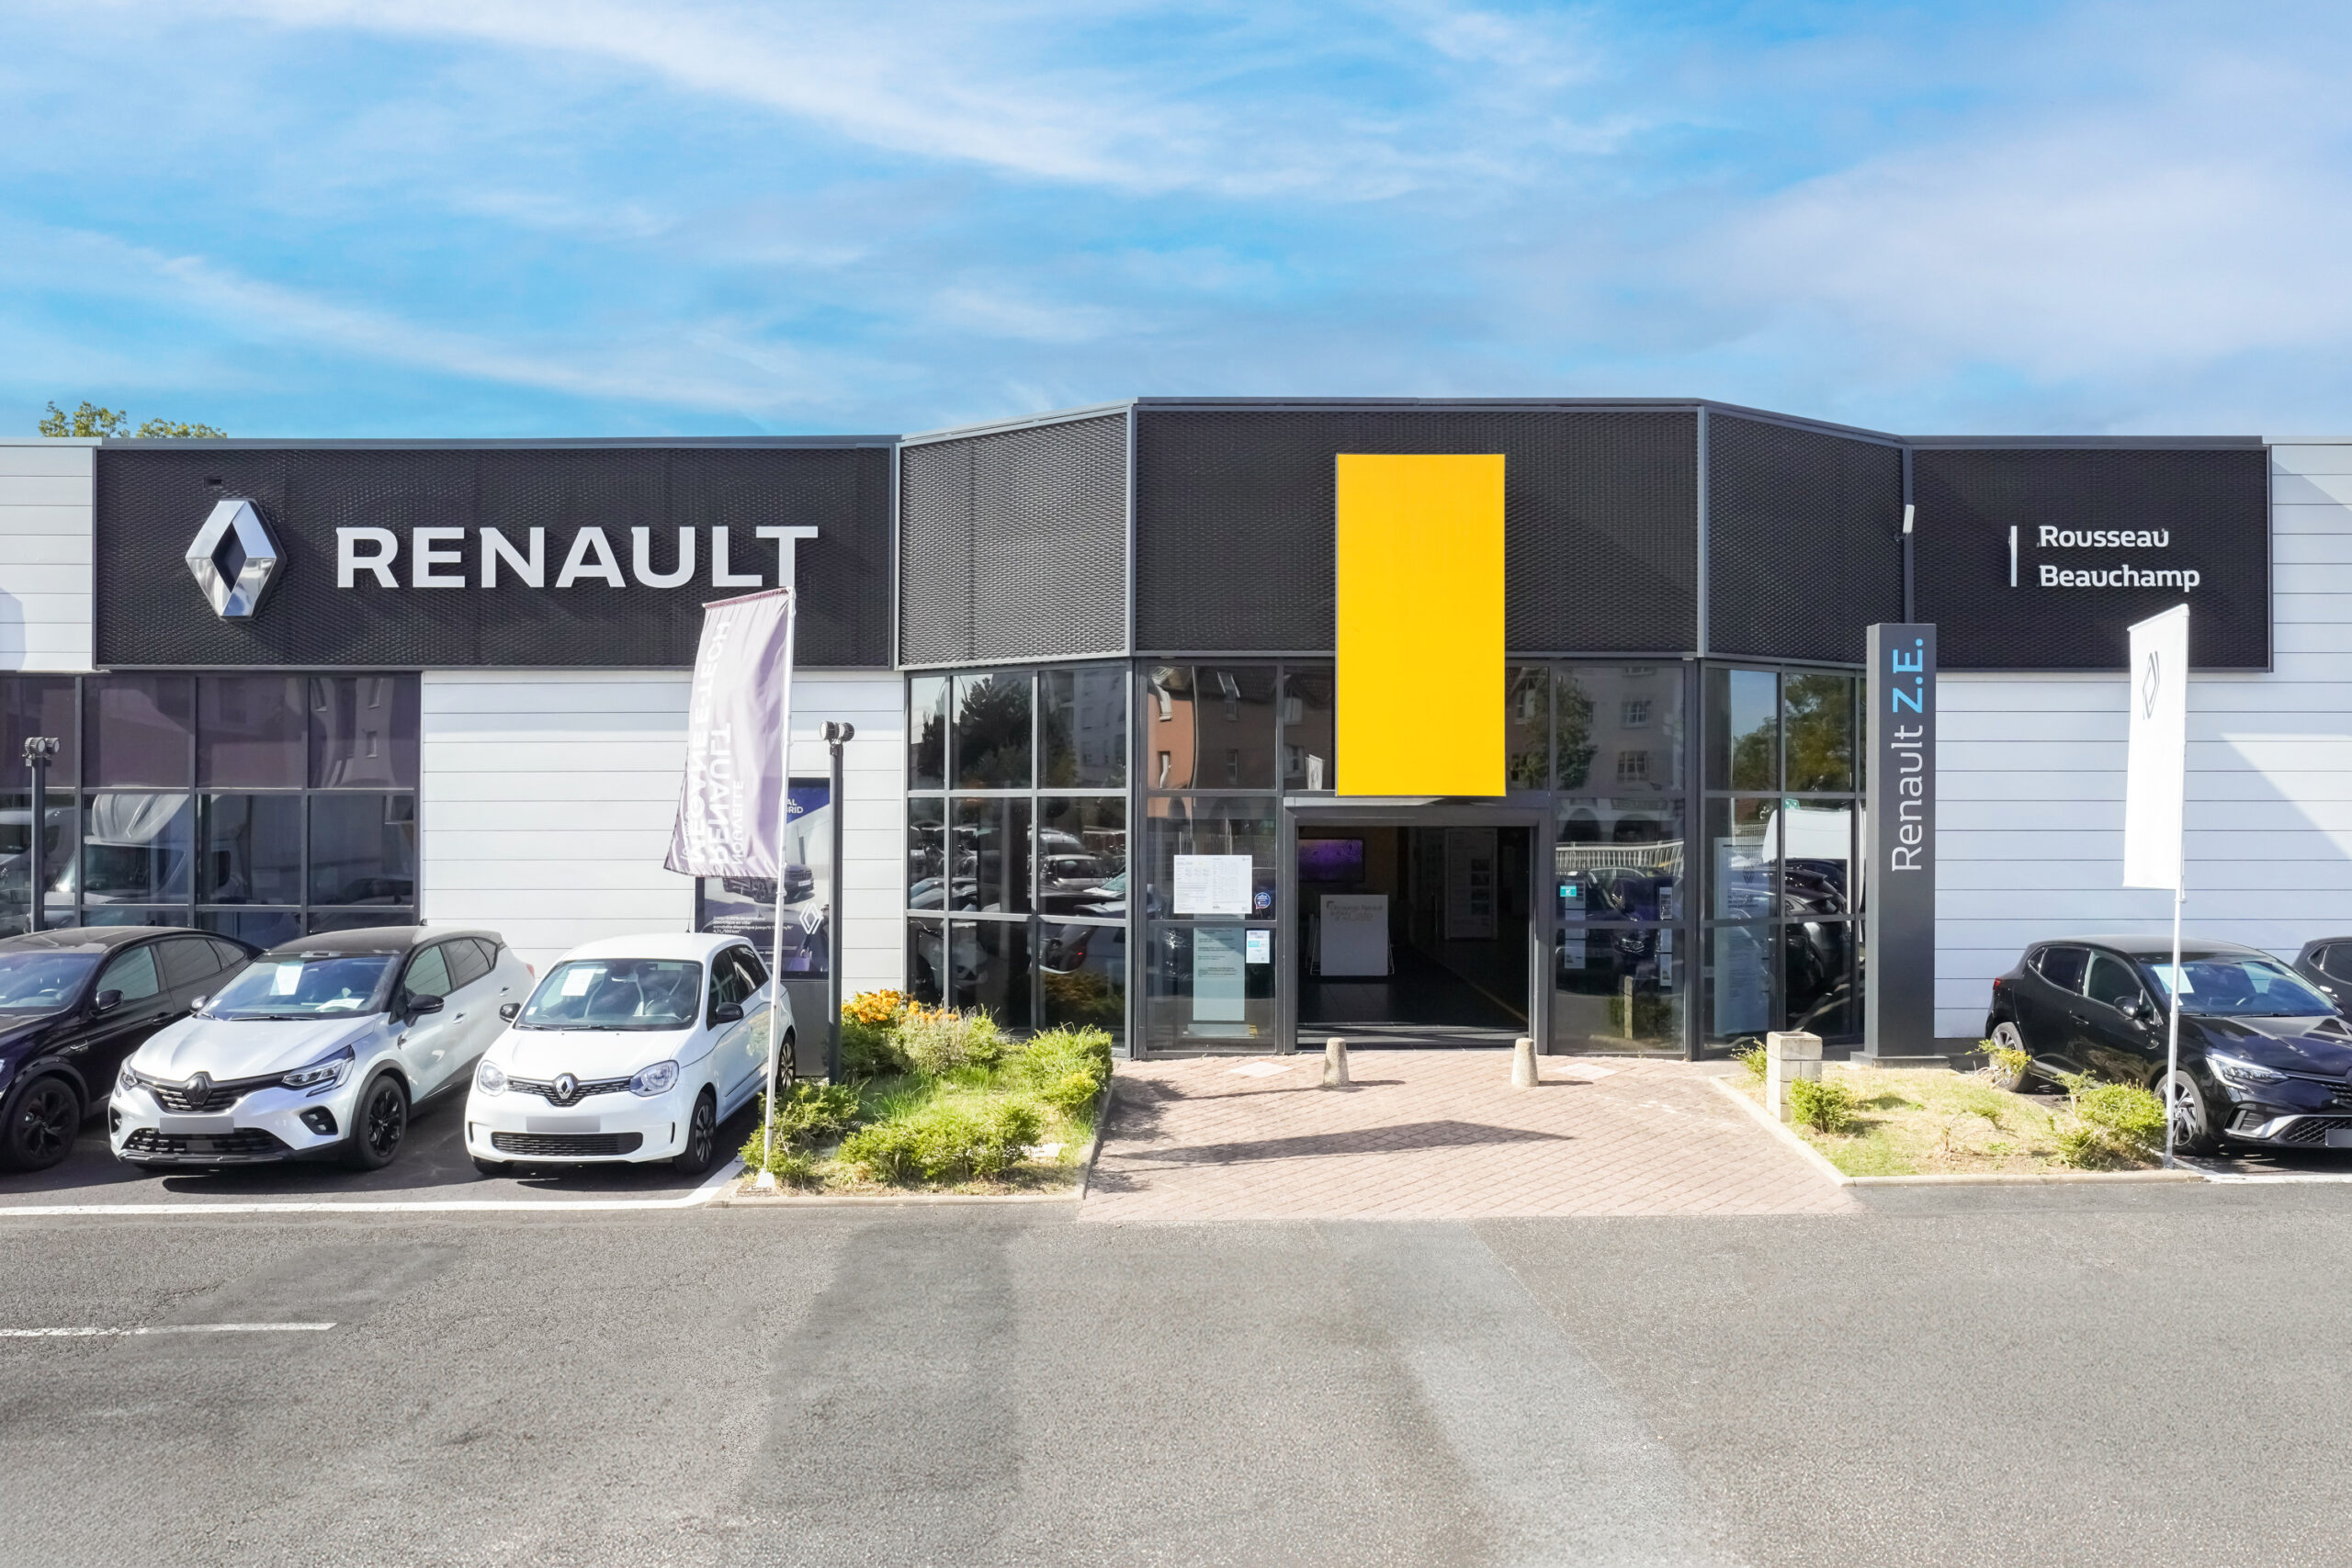 Renault Beauchamp concession Rousseau Automobile